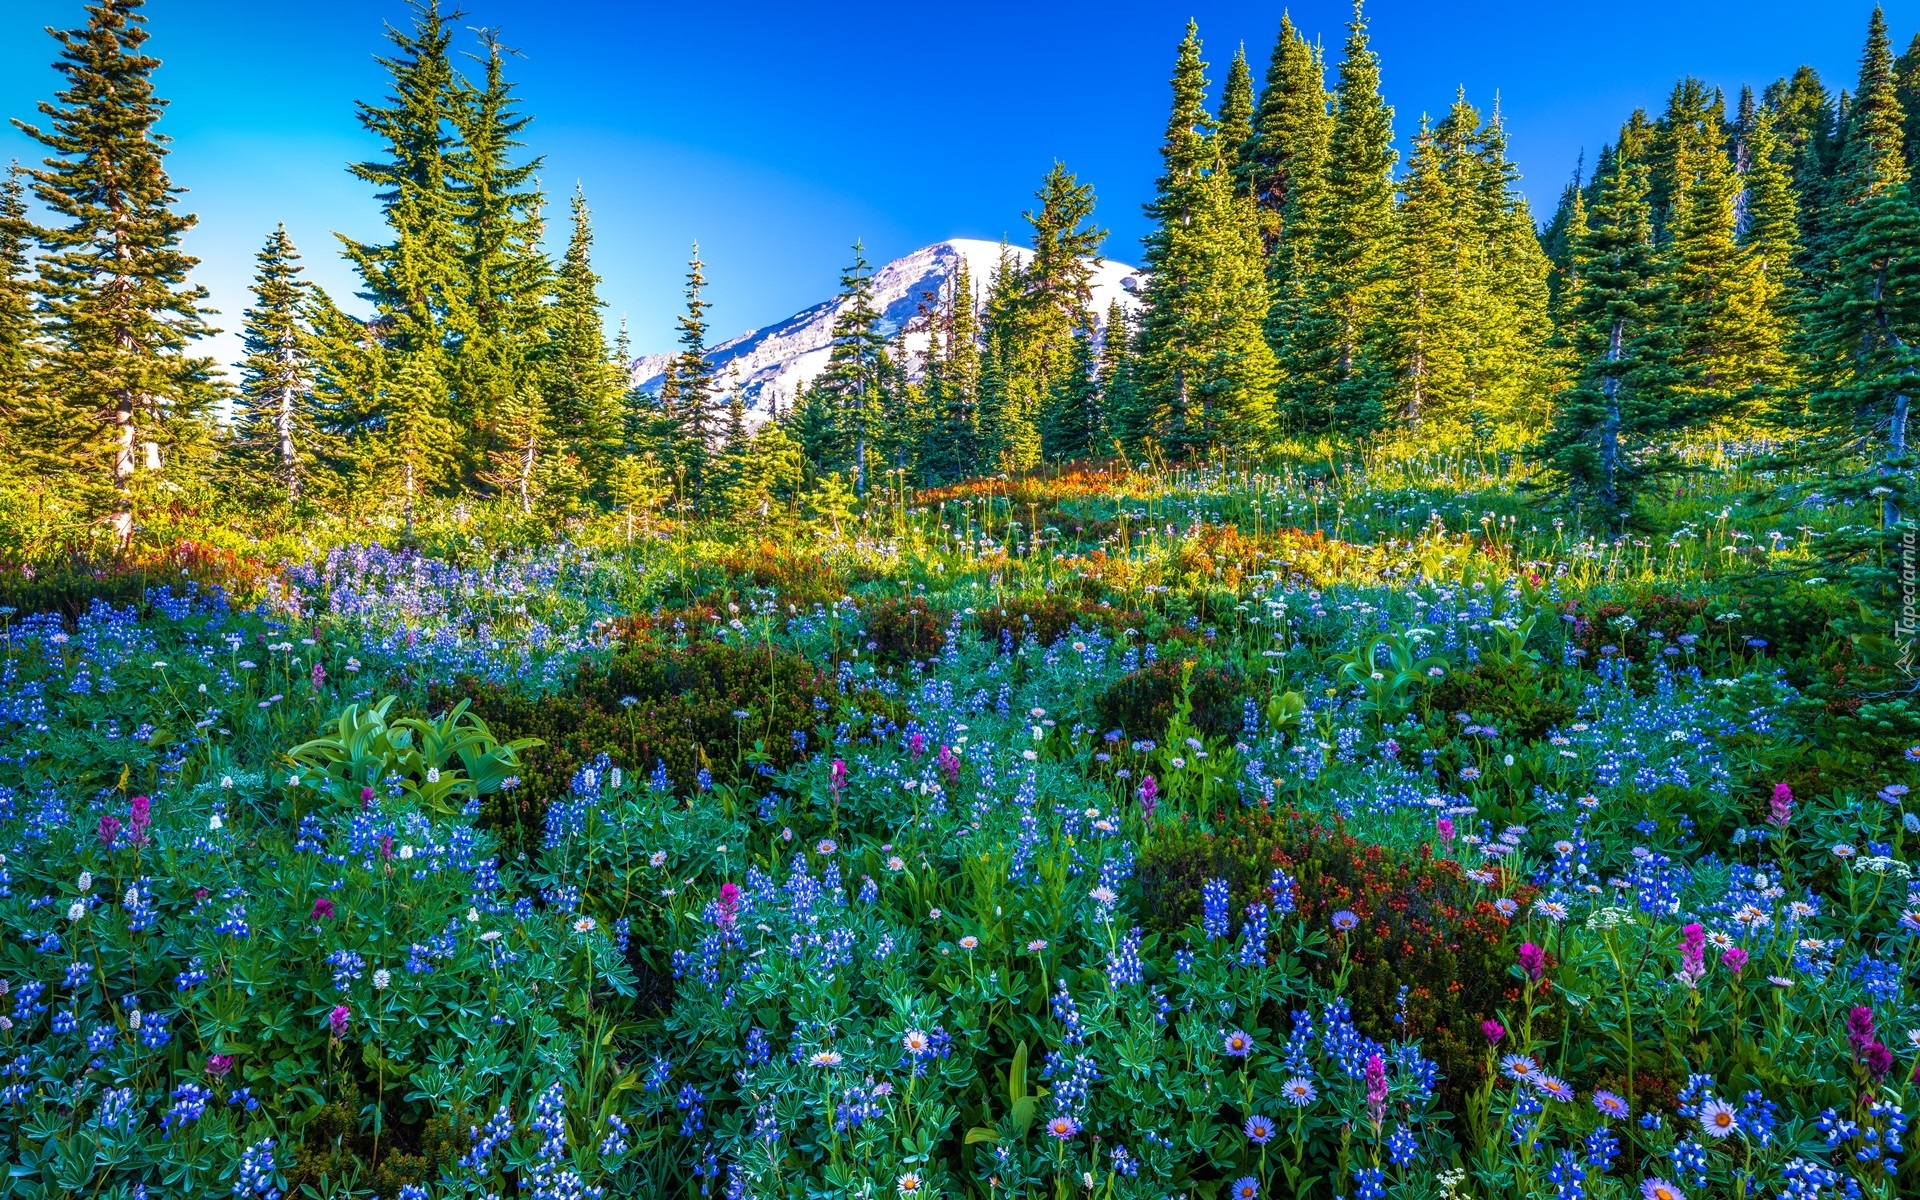 Park Narodowy Mount Rainier, Góry, Stratowulkan Mount Rainier, Drzewa, Świerki, Łąka, Kwiaty, Stan Waszyngton, Stany Zjednoczone